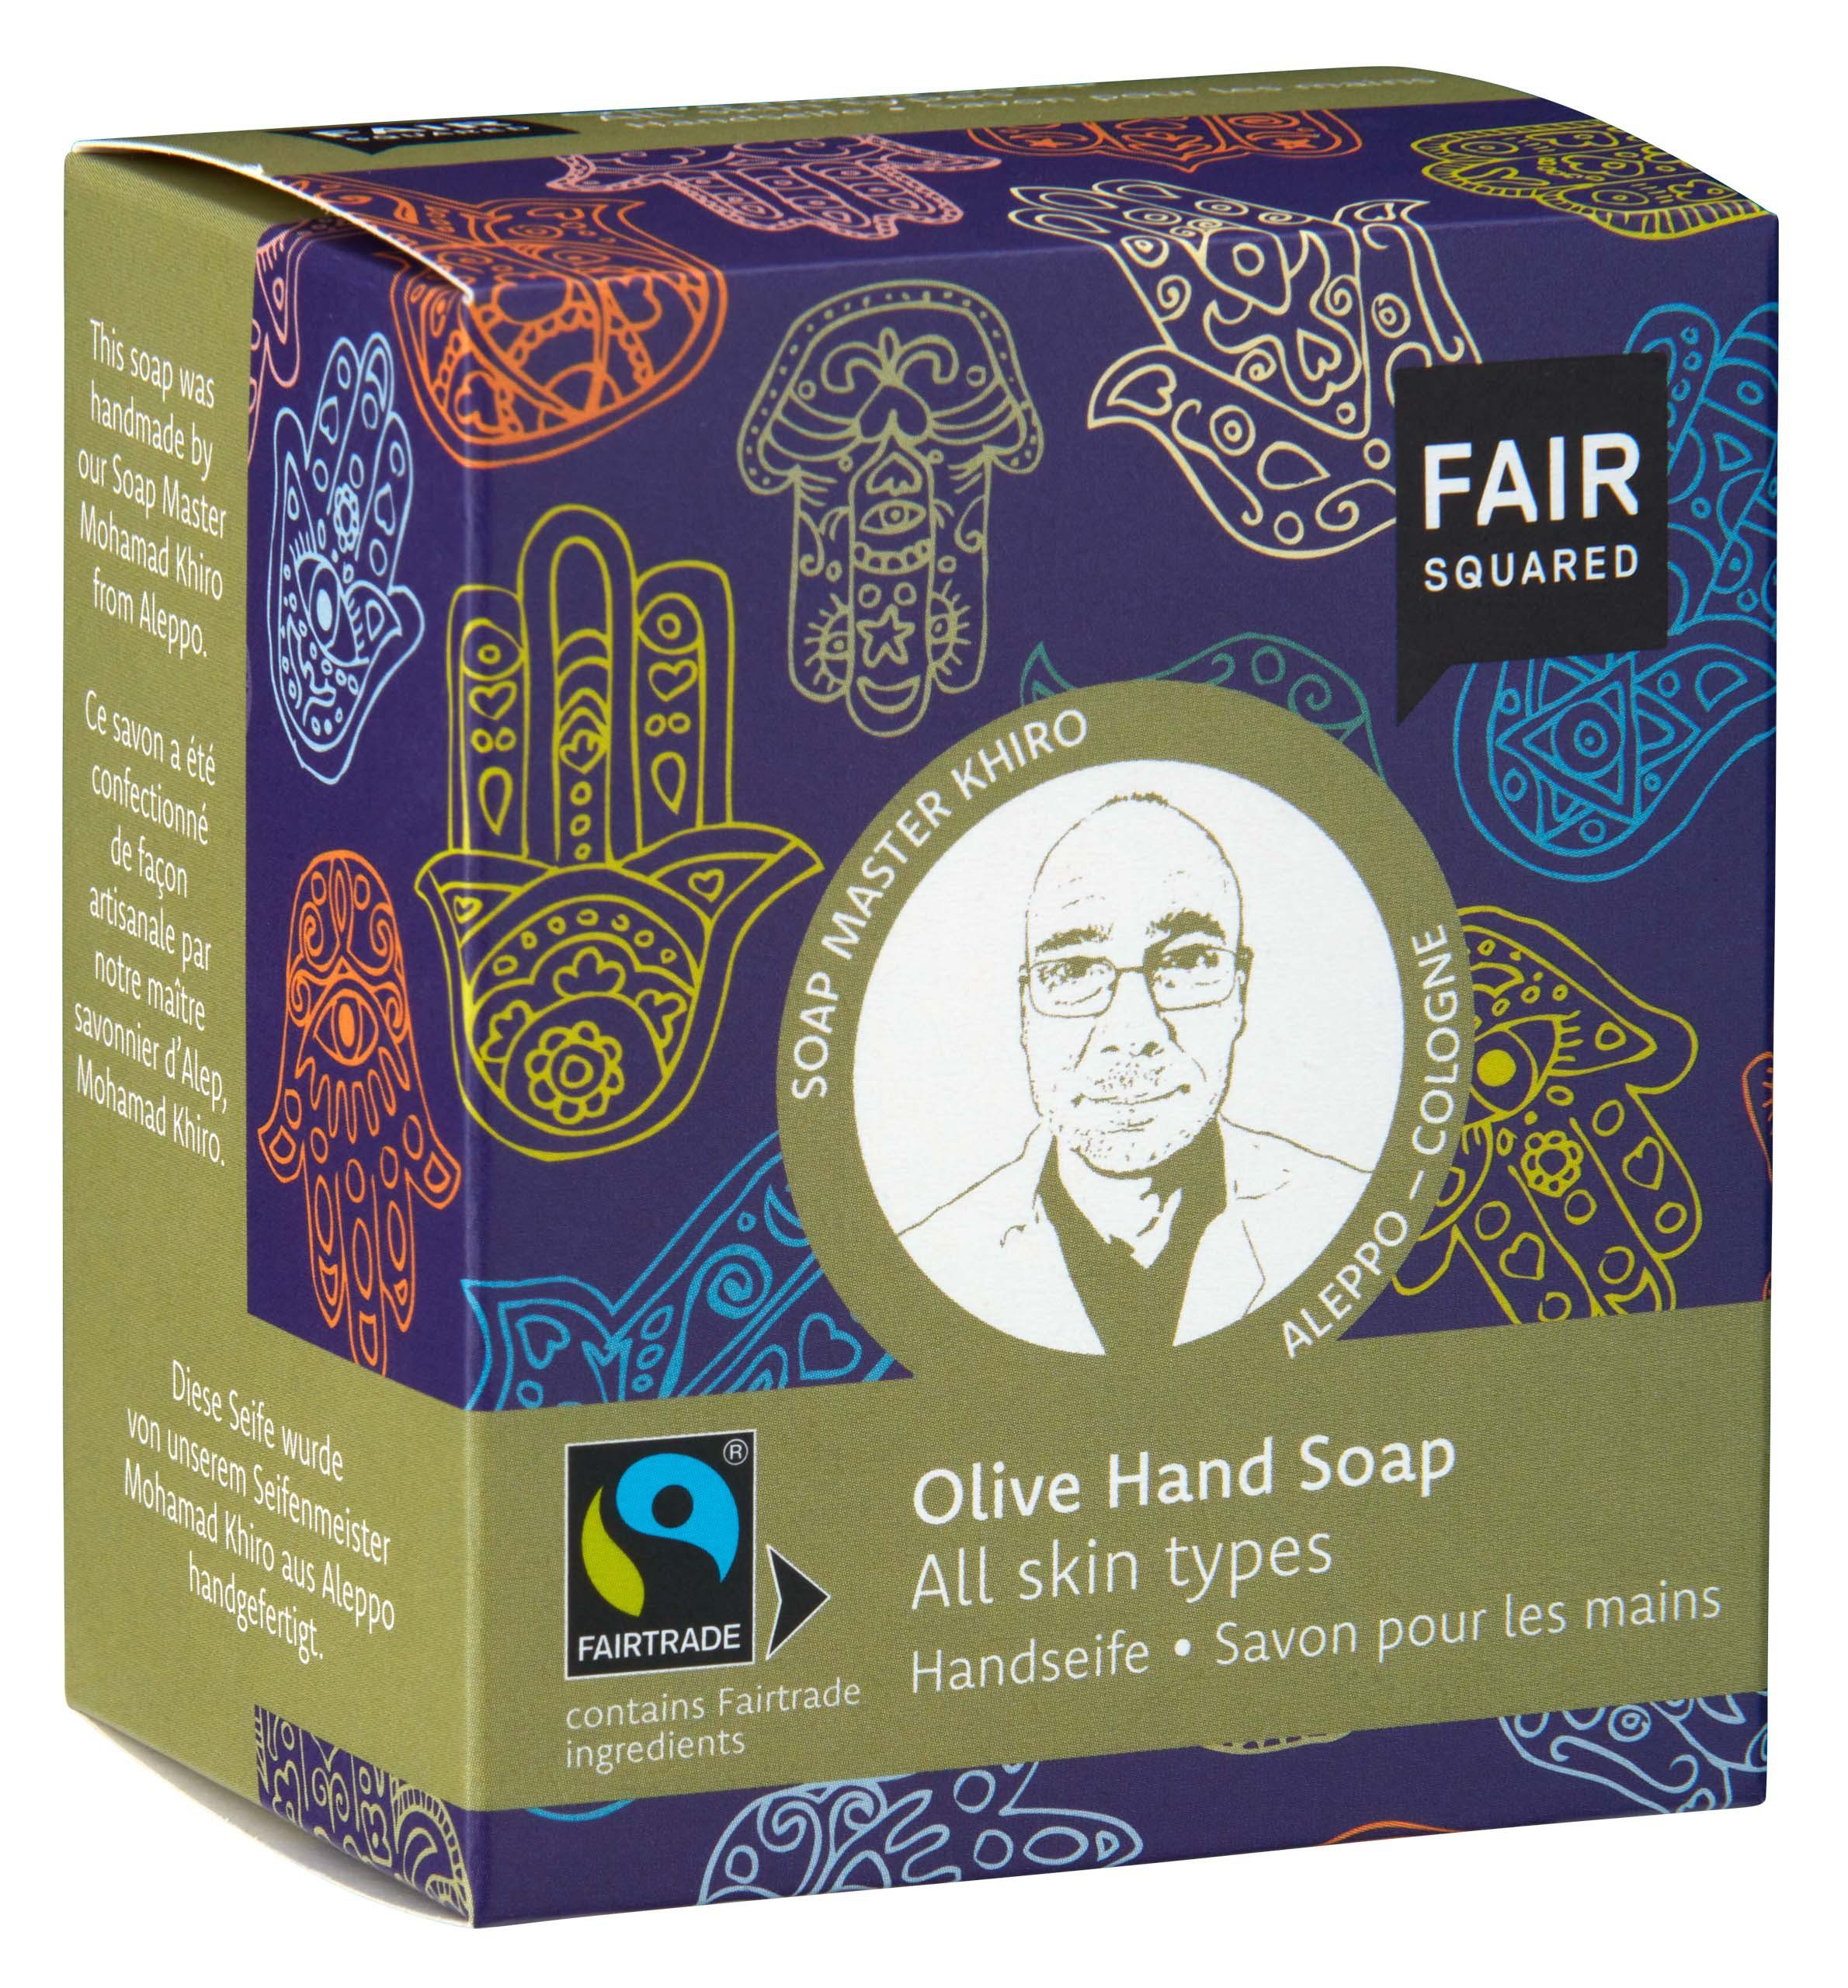 Fair Squared Handseife FAIR SQUARED Hauttypen Hauttypen fair Inhaltsstoffen, Für Handseife für 1-tlg., gehandelten alle geeignet alle mit Olivenöl mit